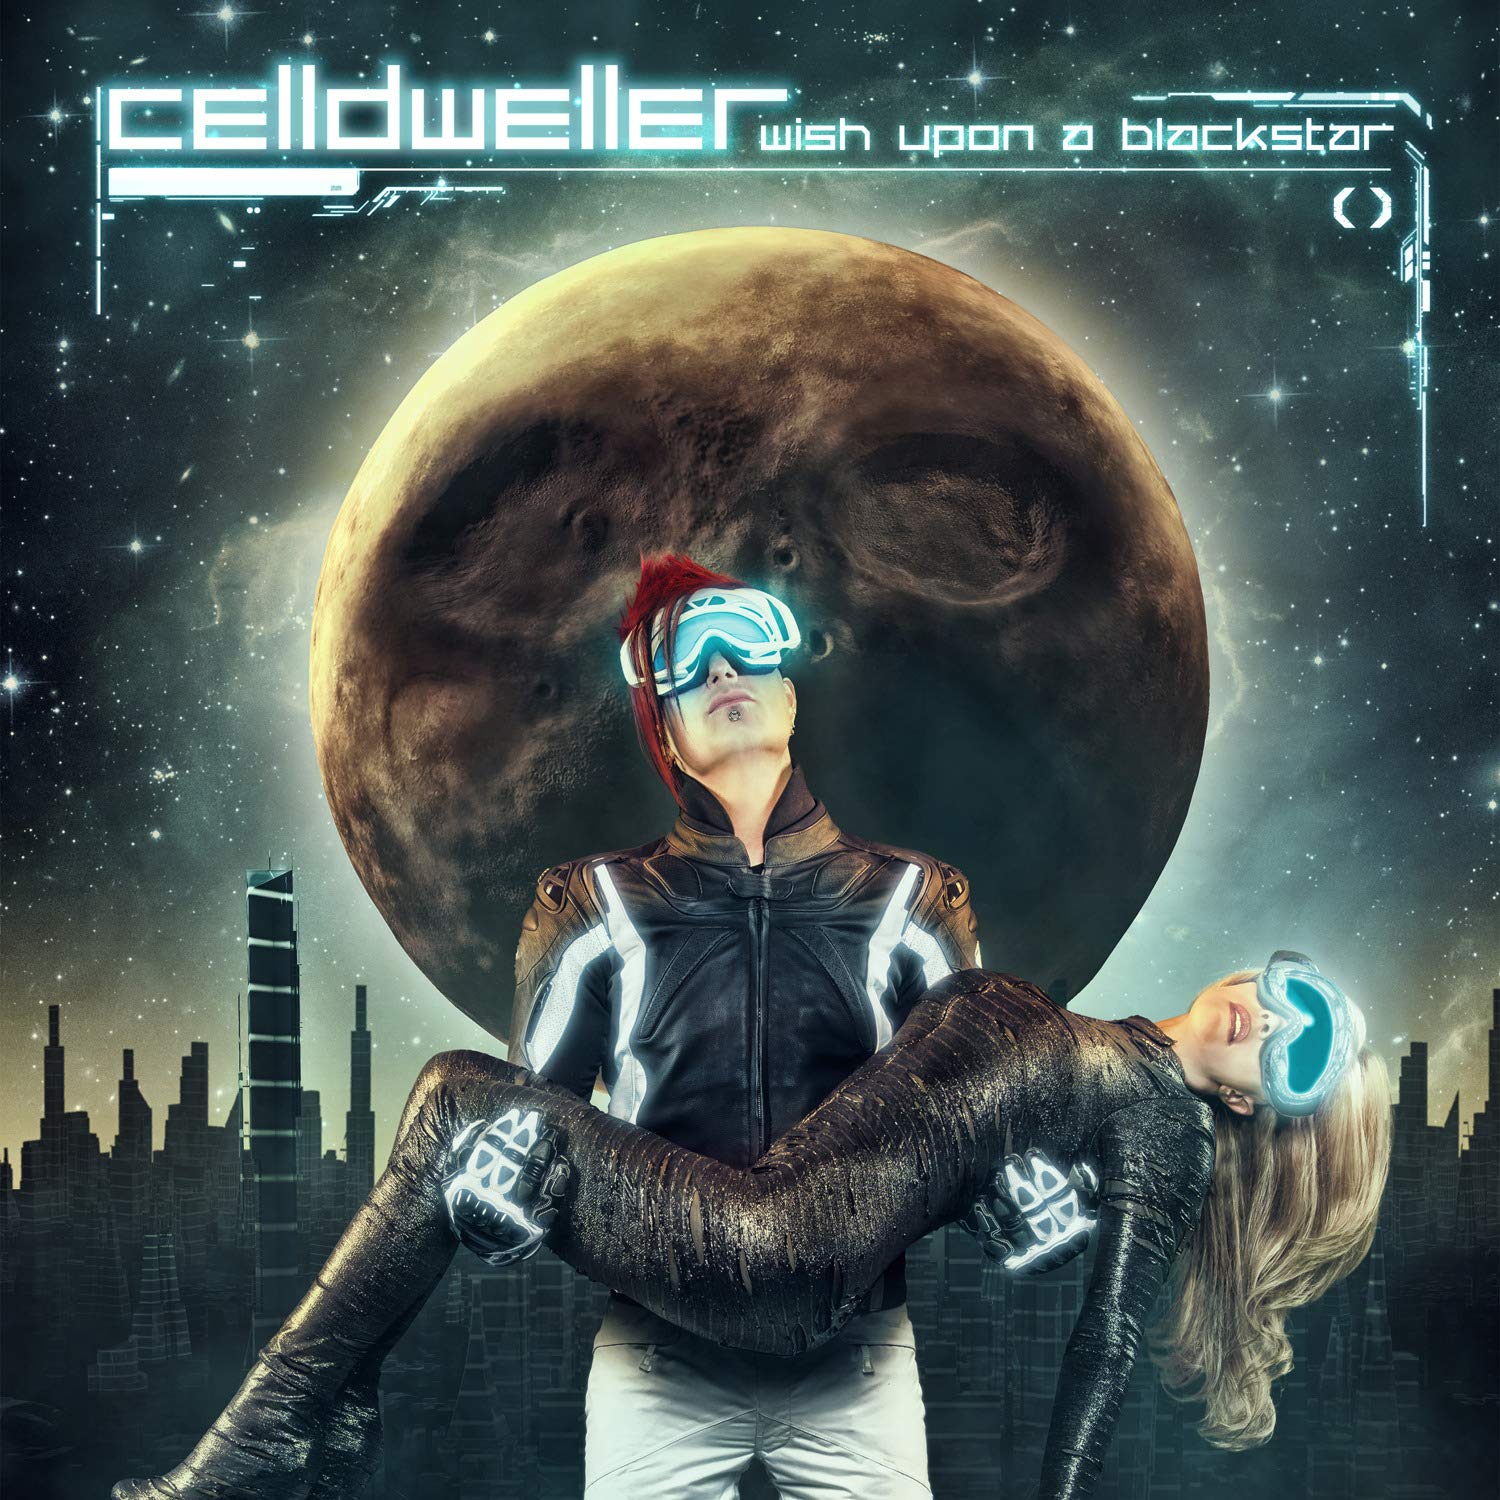 Celldweller - Louder Than Words